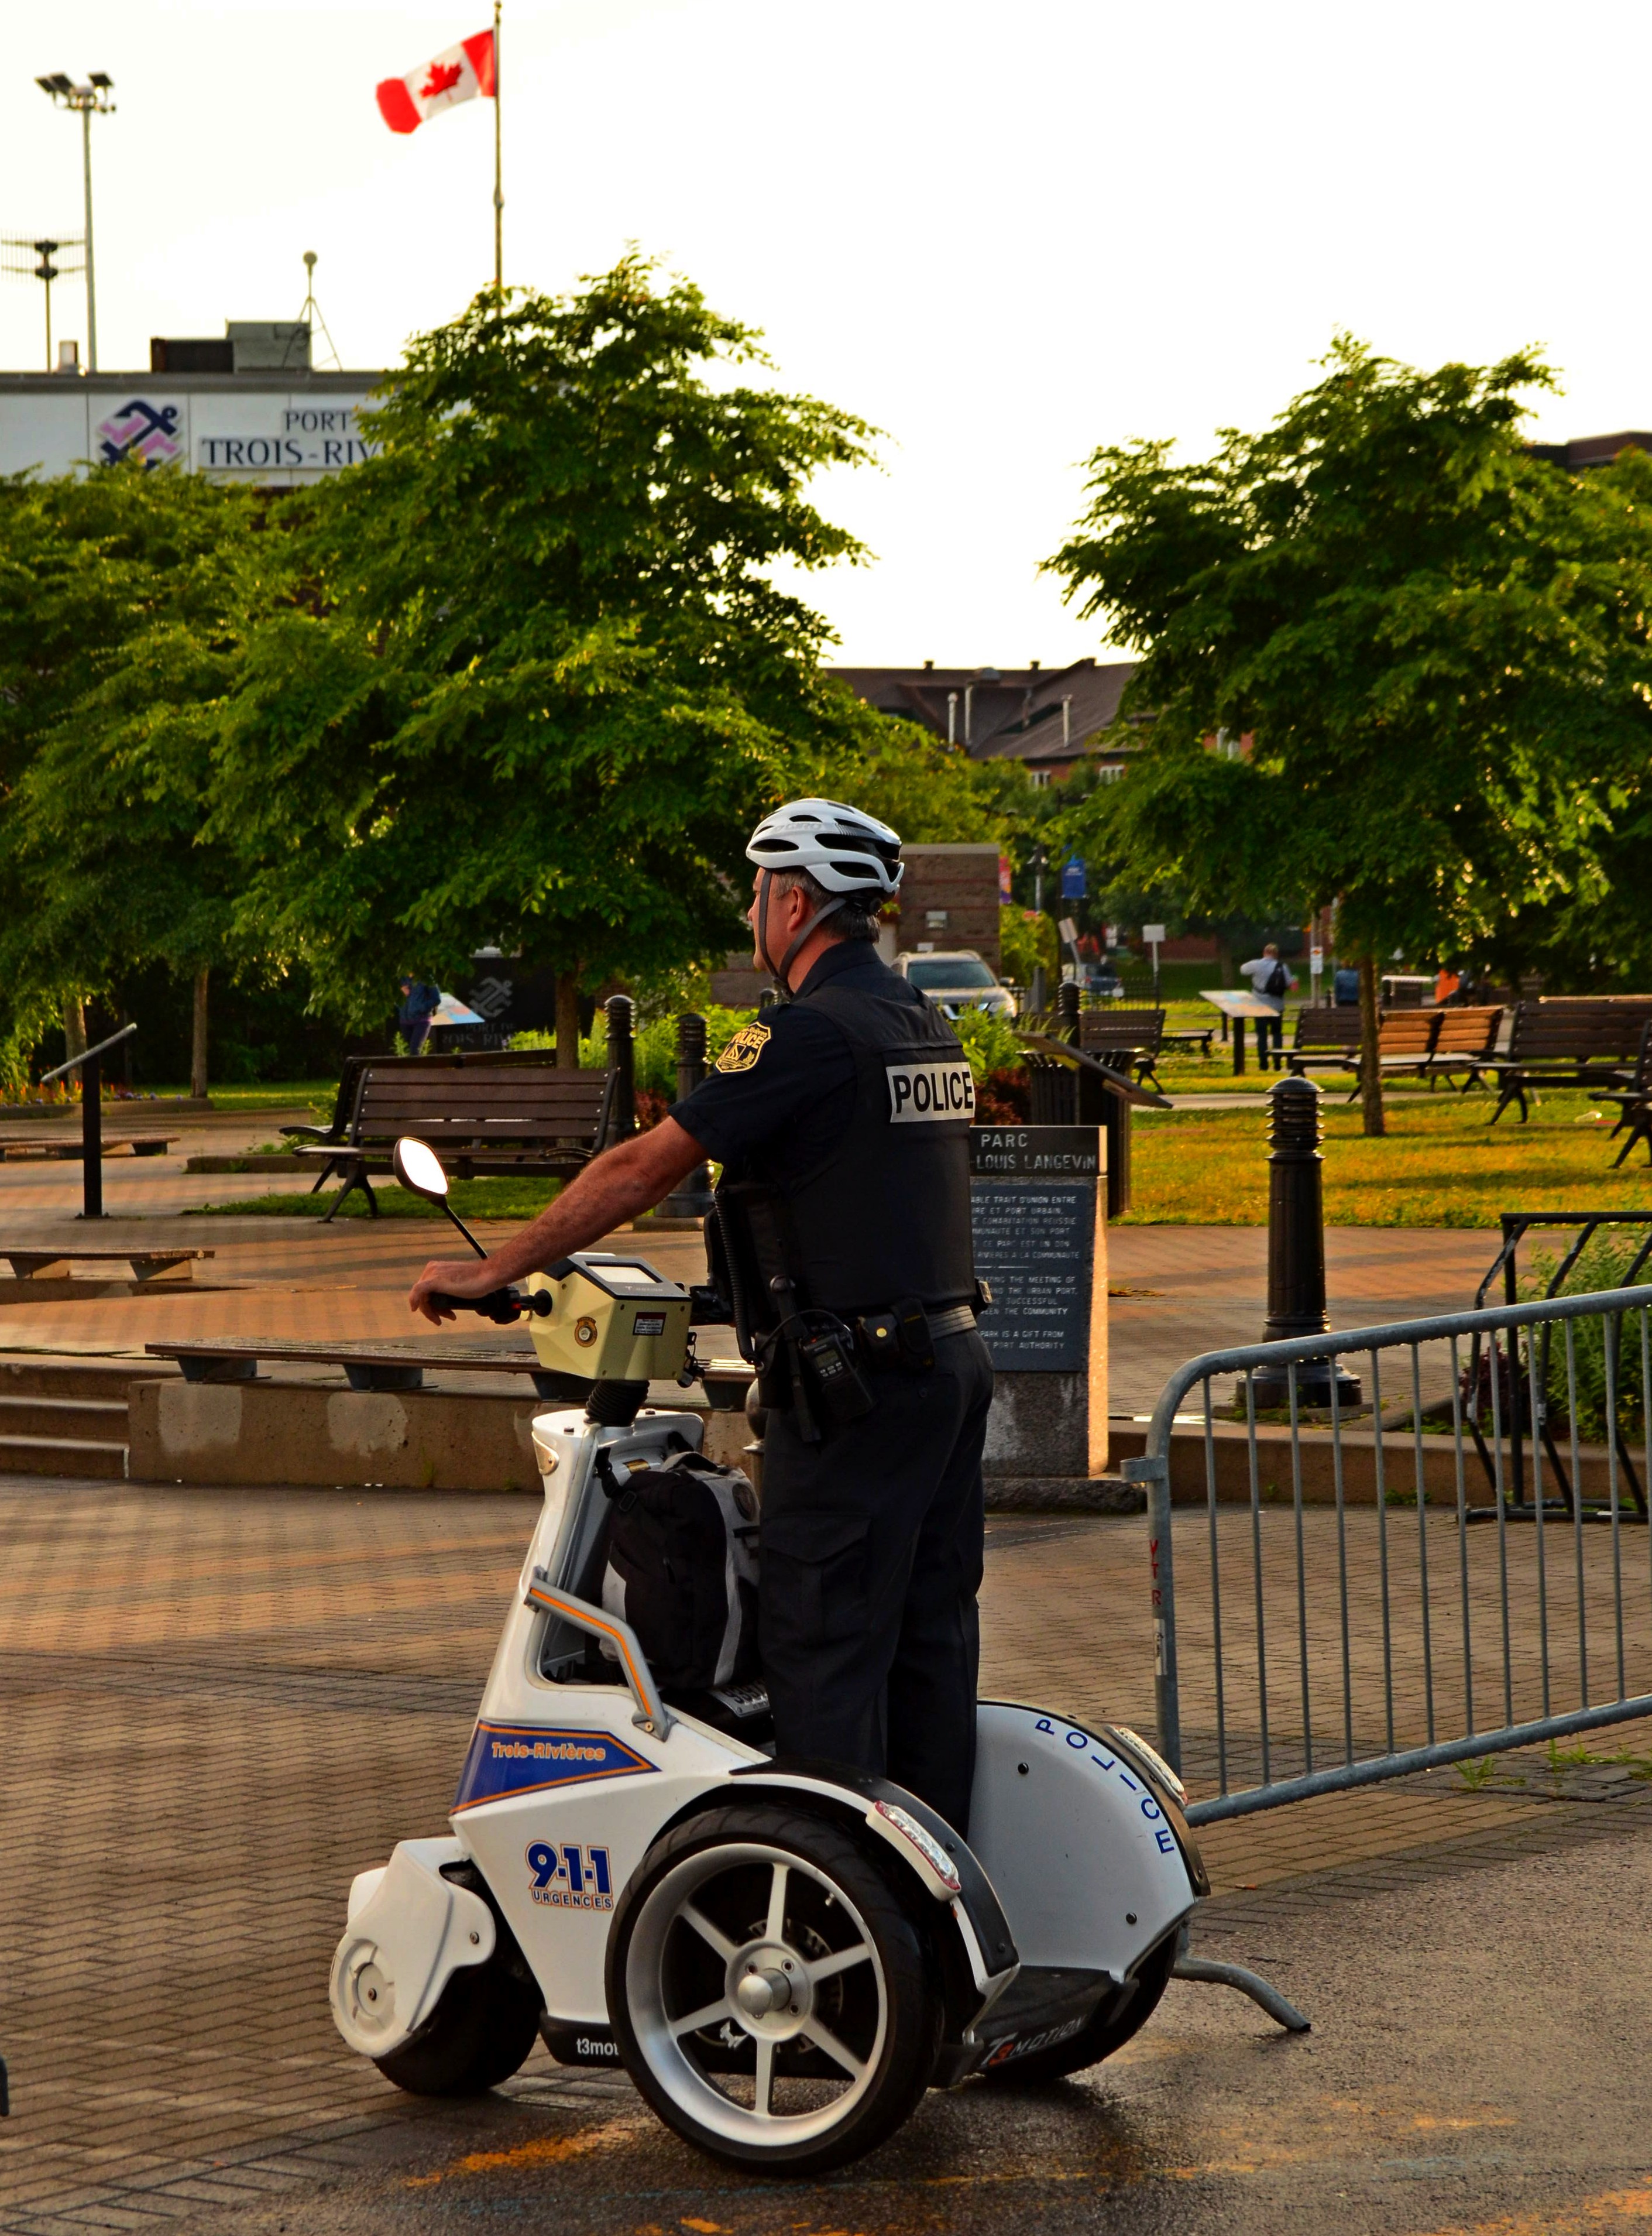 полиция делает свое дело патрулируя город.